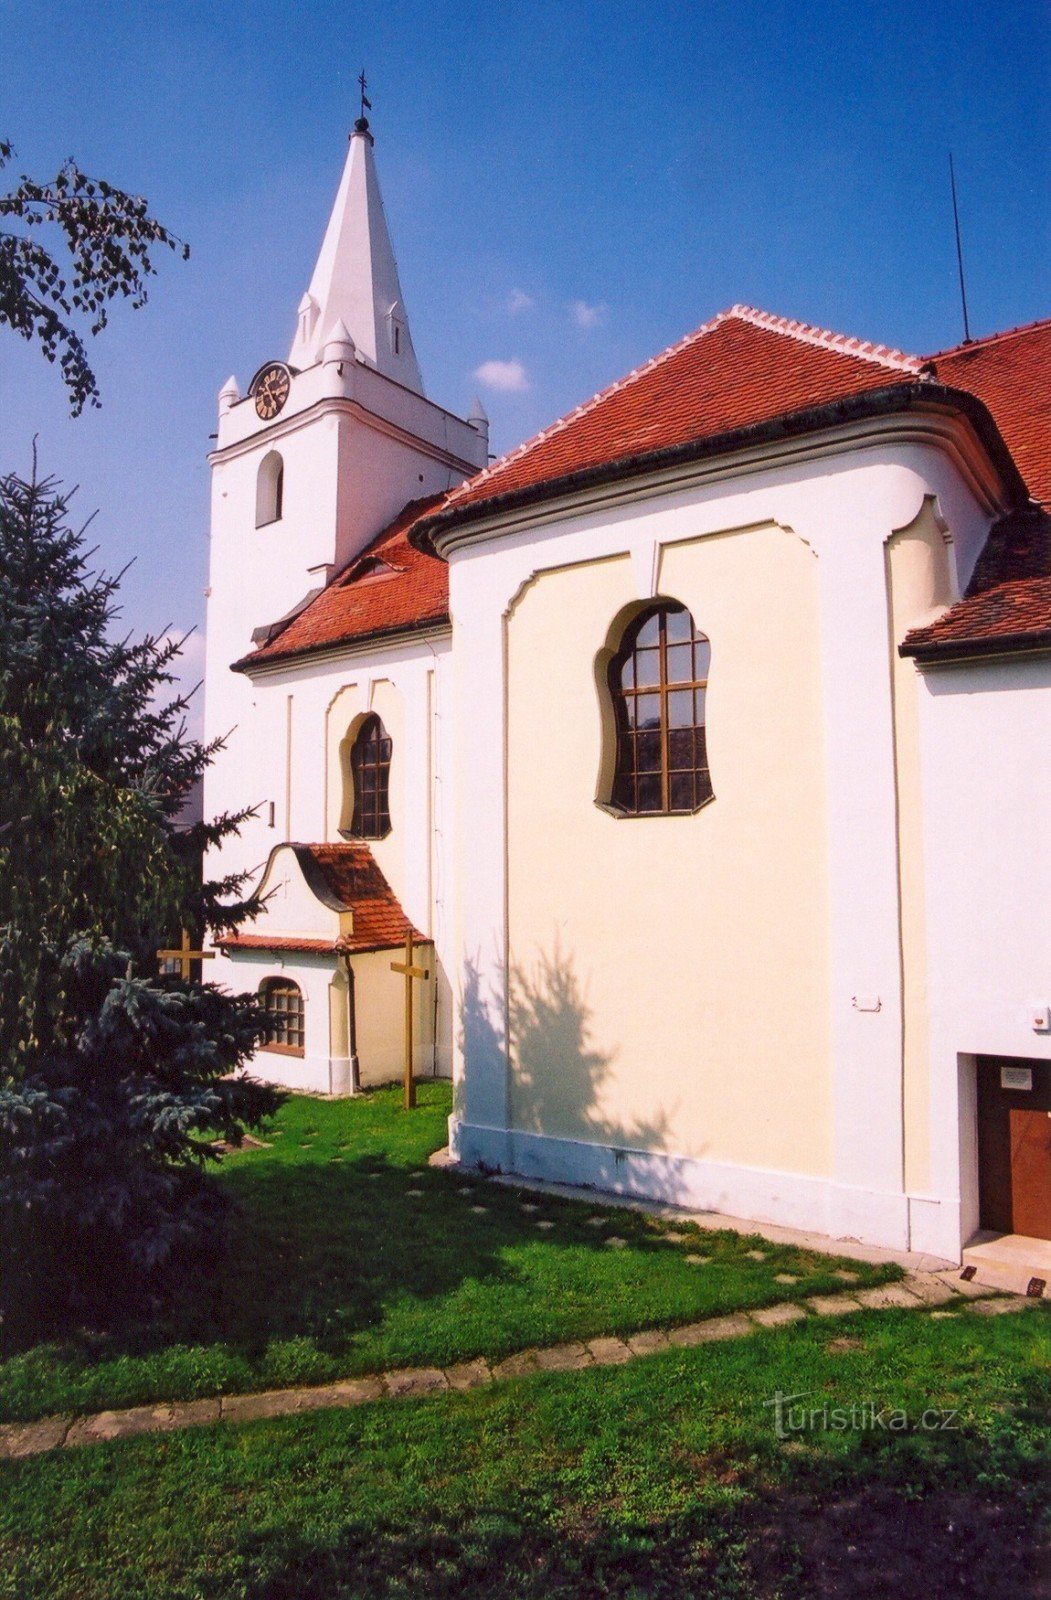 Telnice - church of St. John the Baptist